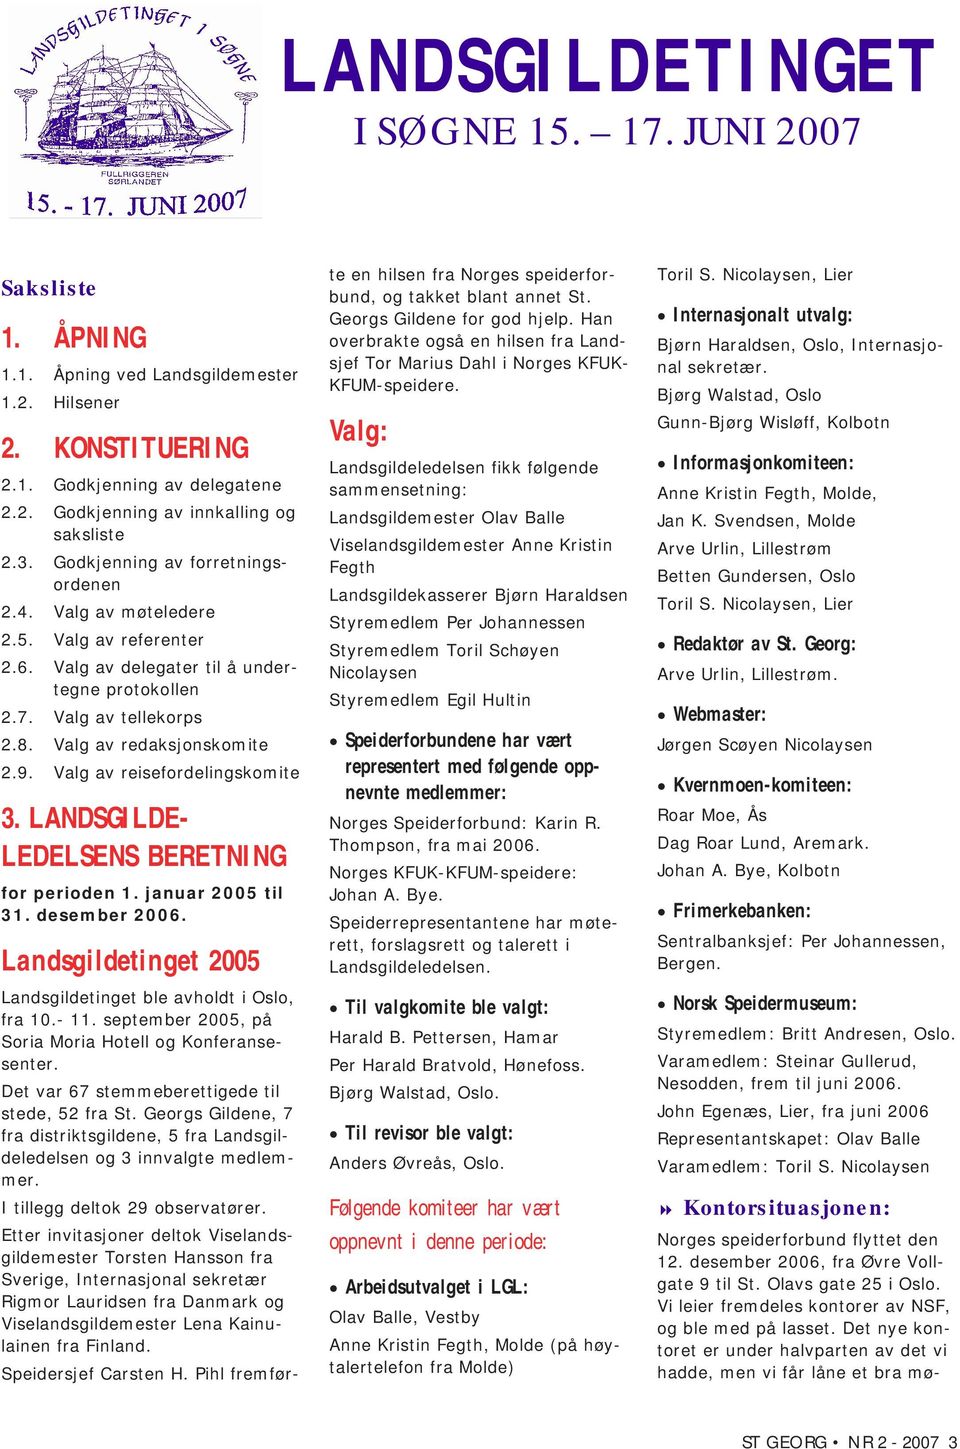 Valg av reisefordelingskomite 3. LANDSGILDE- LEDELSENS BERETNING for perioden 1. januar 2005 til 31. desember 2006. Landsgildetinget 2005 Landsgildetinget ble avholdt i Oslo, fra 10.- 11.